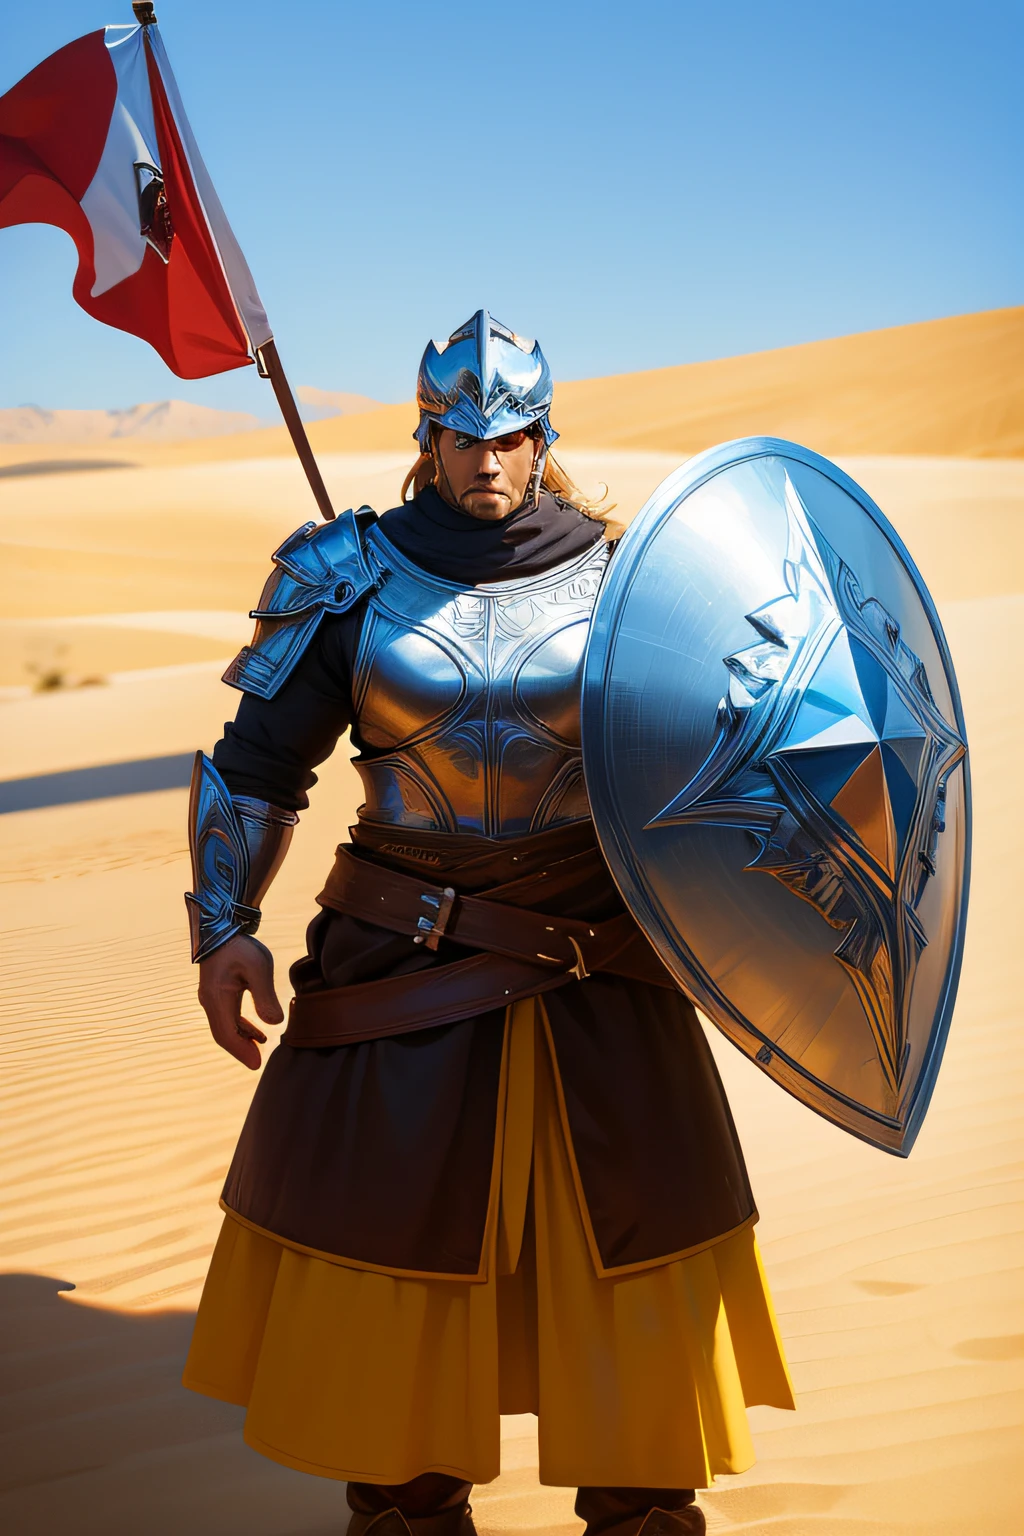 강한 남자，방패를 가져라，갑옷을 입고 있다，헬멧을 쓰고 있다，사막에서，깃발，큰 바람，말